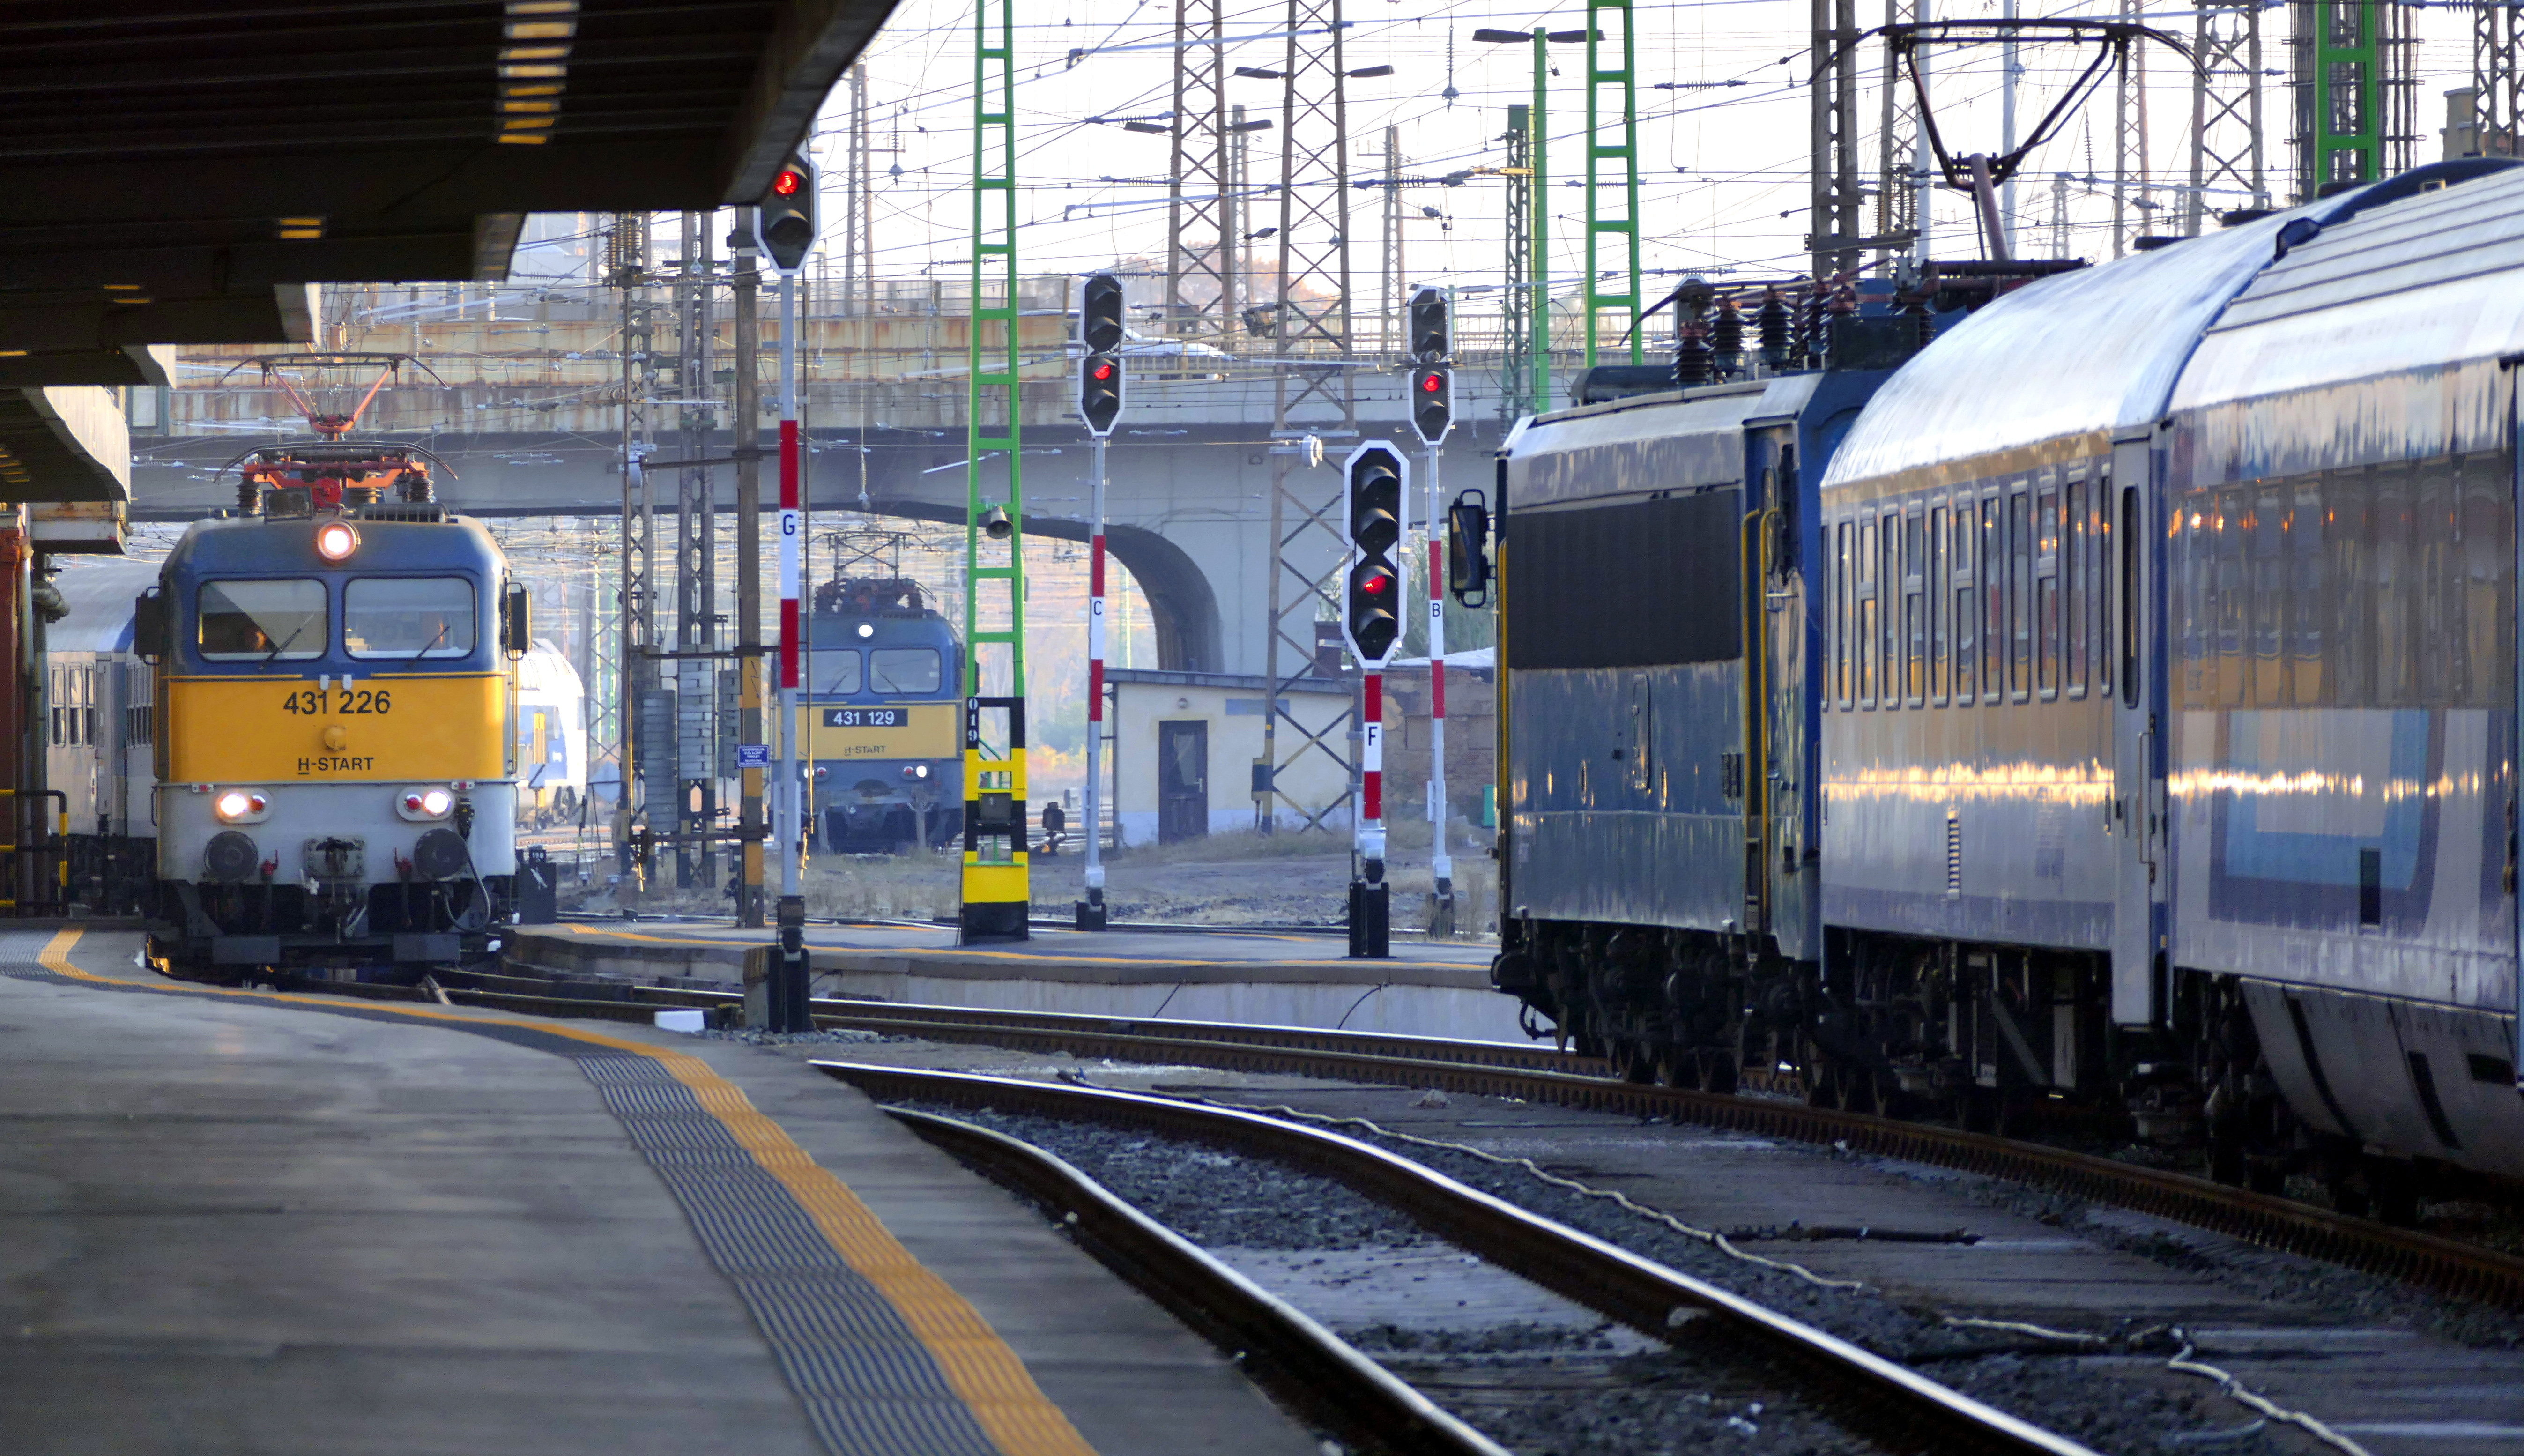 Spanyol fiatalok okoztak káoszt Kelenföldön, 3 óra késéssel indult el a Ljubljanába tartó vonat